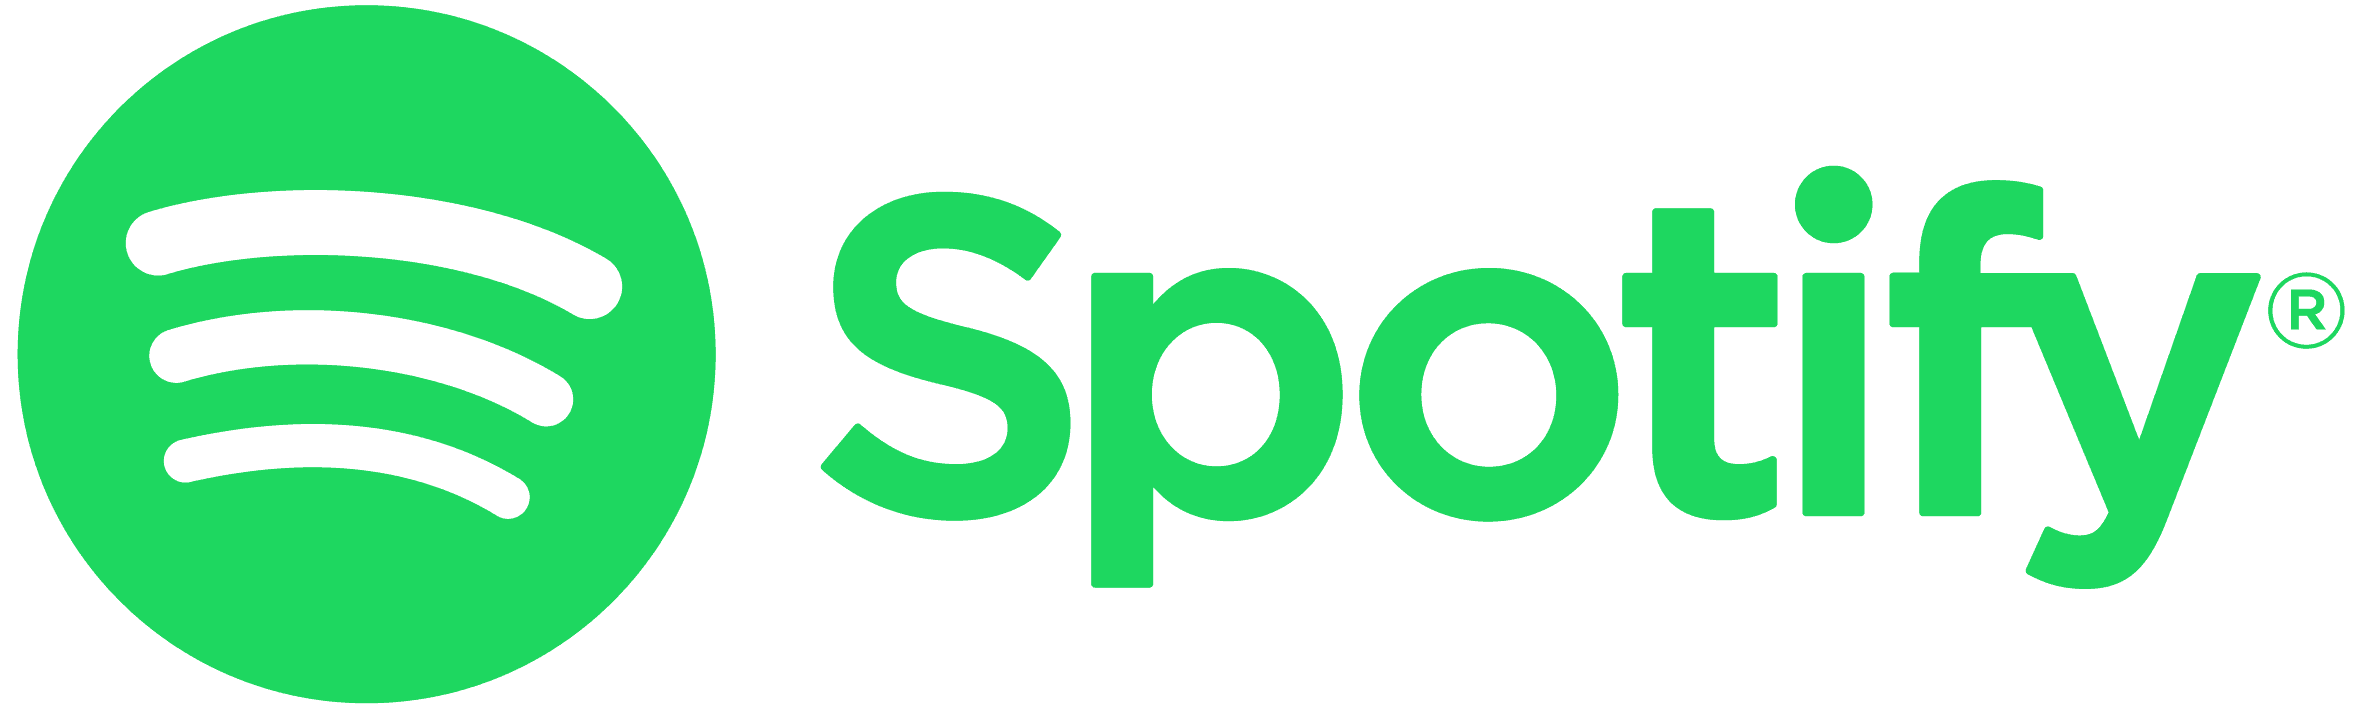 Spotify_Logo_RGB_Green